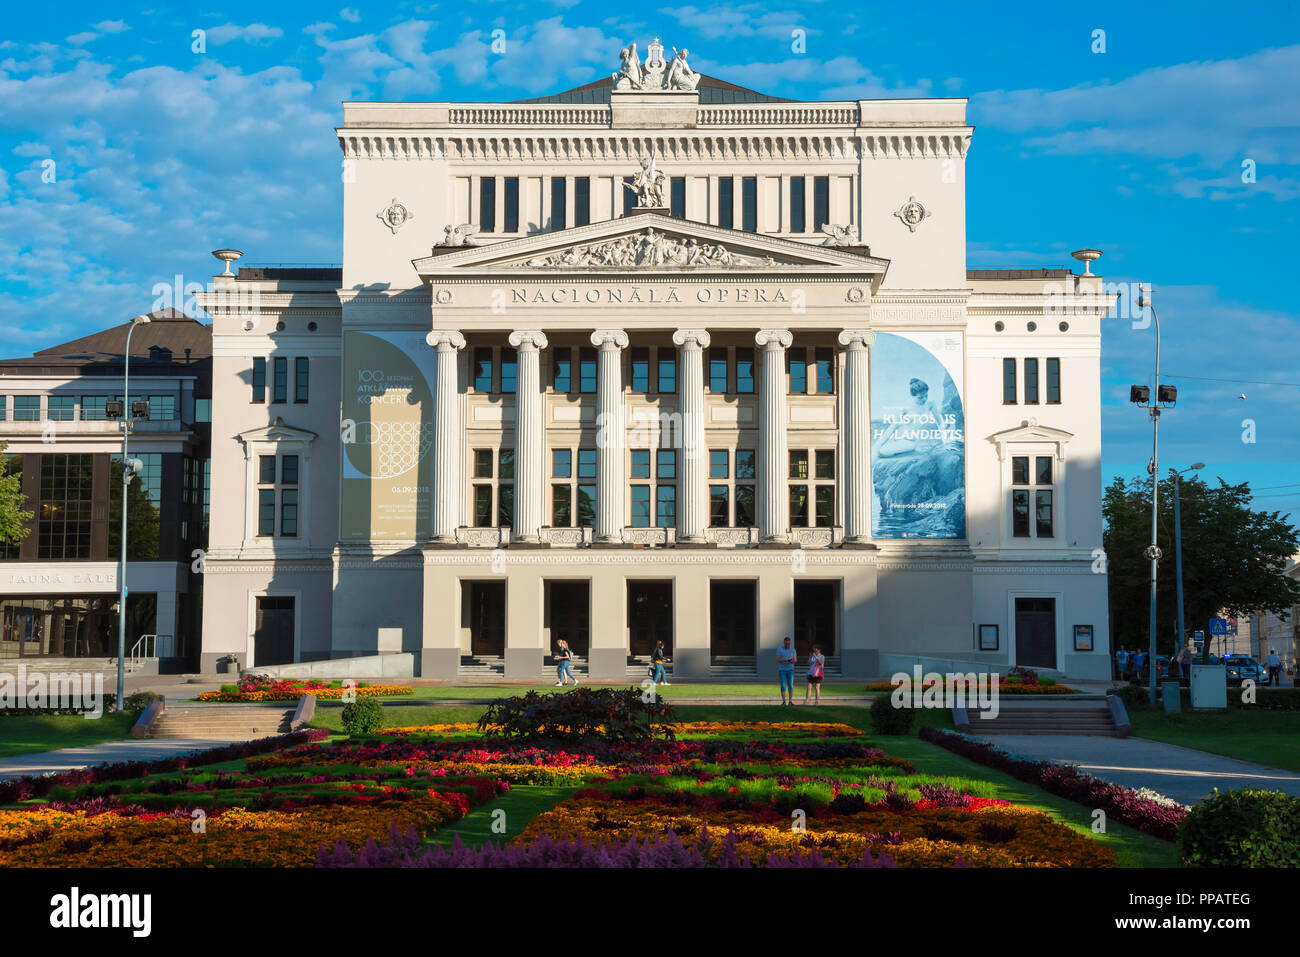 Riga Opera House, der Blick über die Strulaka Park und Garten in Richtung der neoklassizistischen Fassade der Rigaer Oper Gebäude, Lettland. Stockfoto